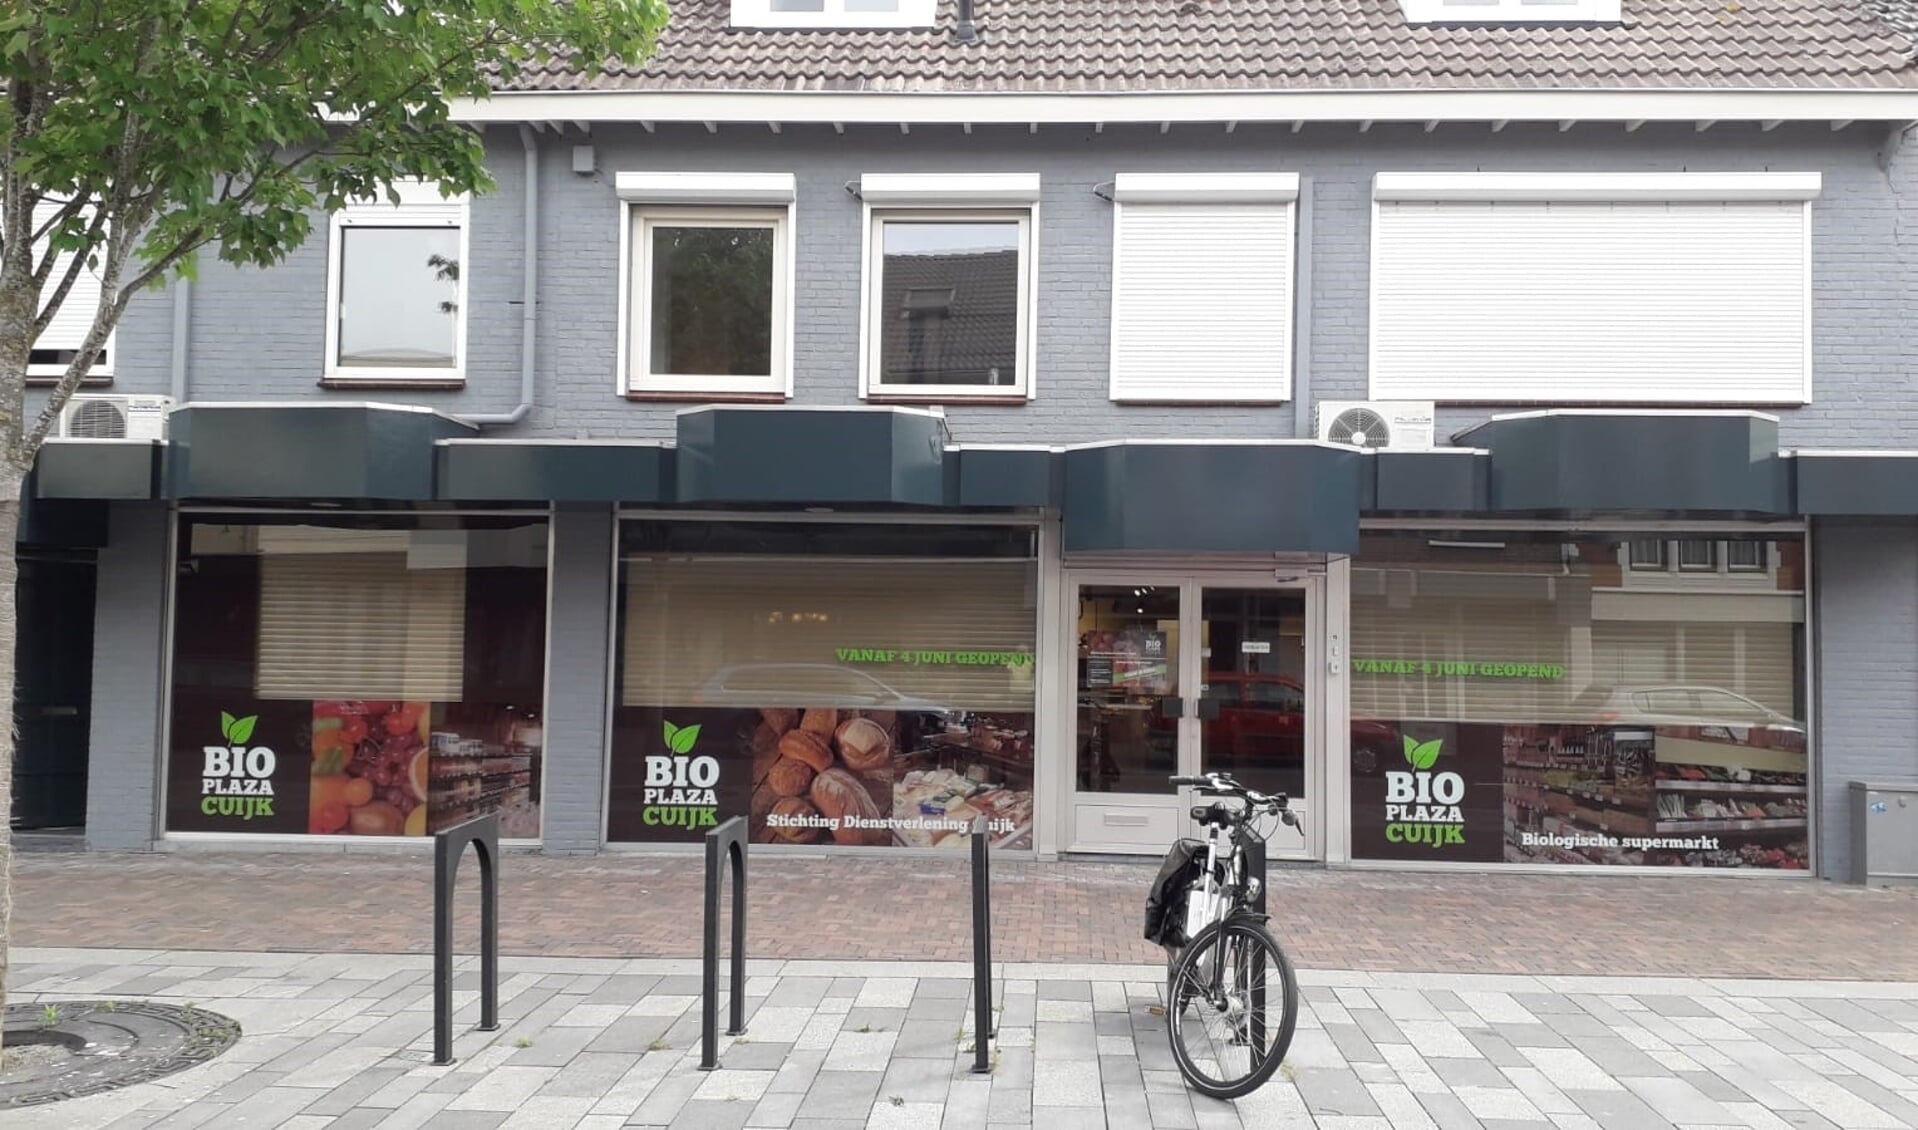 Midden in het centrum van Cuijk opent de nieuwe biologische supermarkt Bioplazacuijk aan de Grotestraat haar deuren.